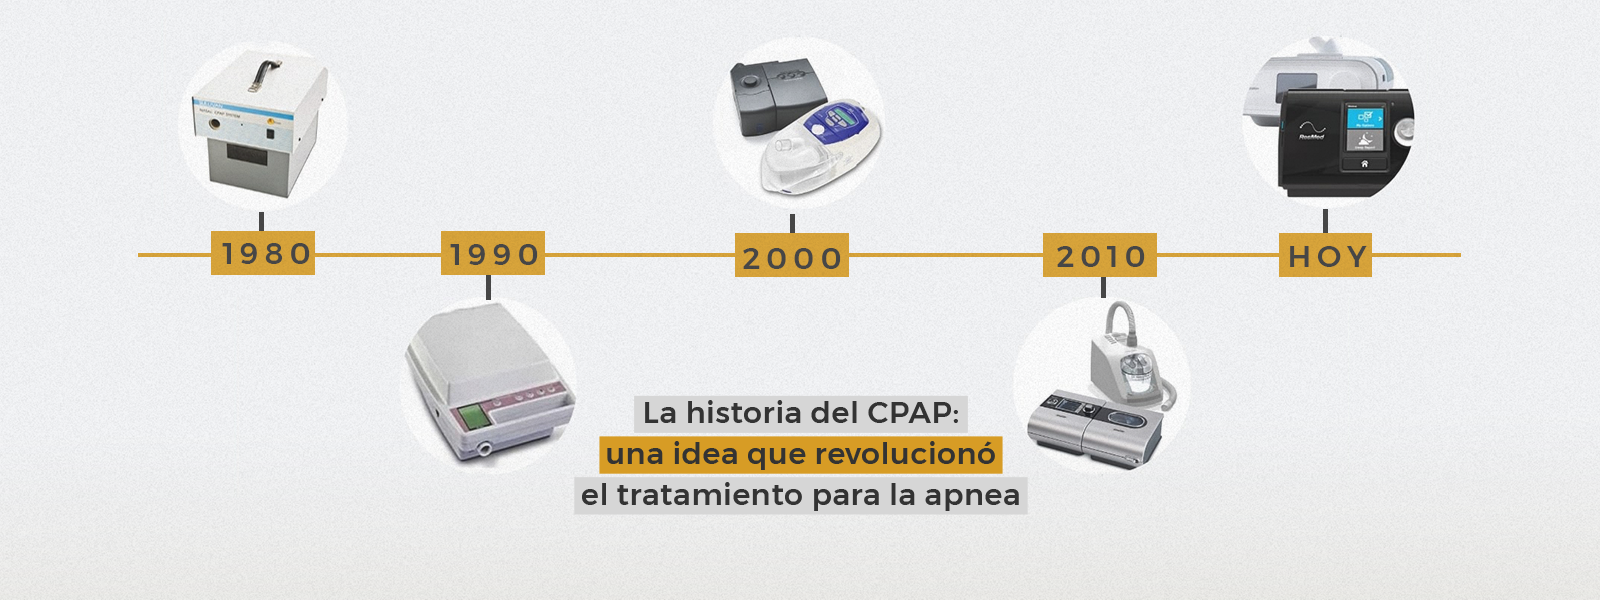 La historia del CPAP: una idea que revolucionó el tratamiento para la apnea 